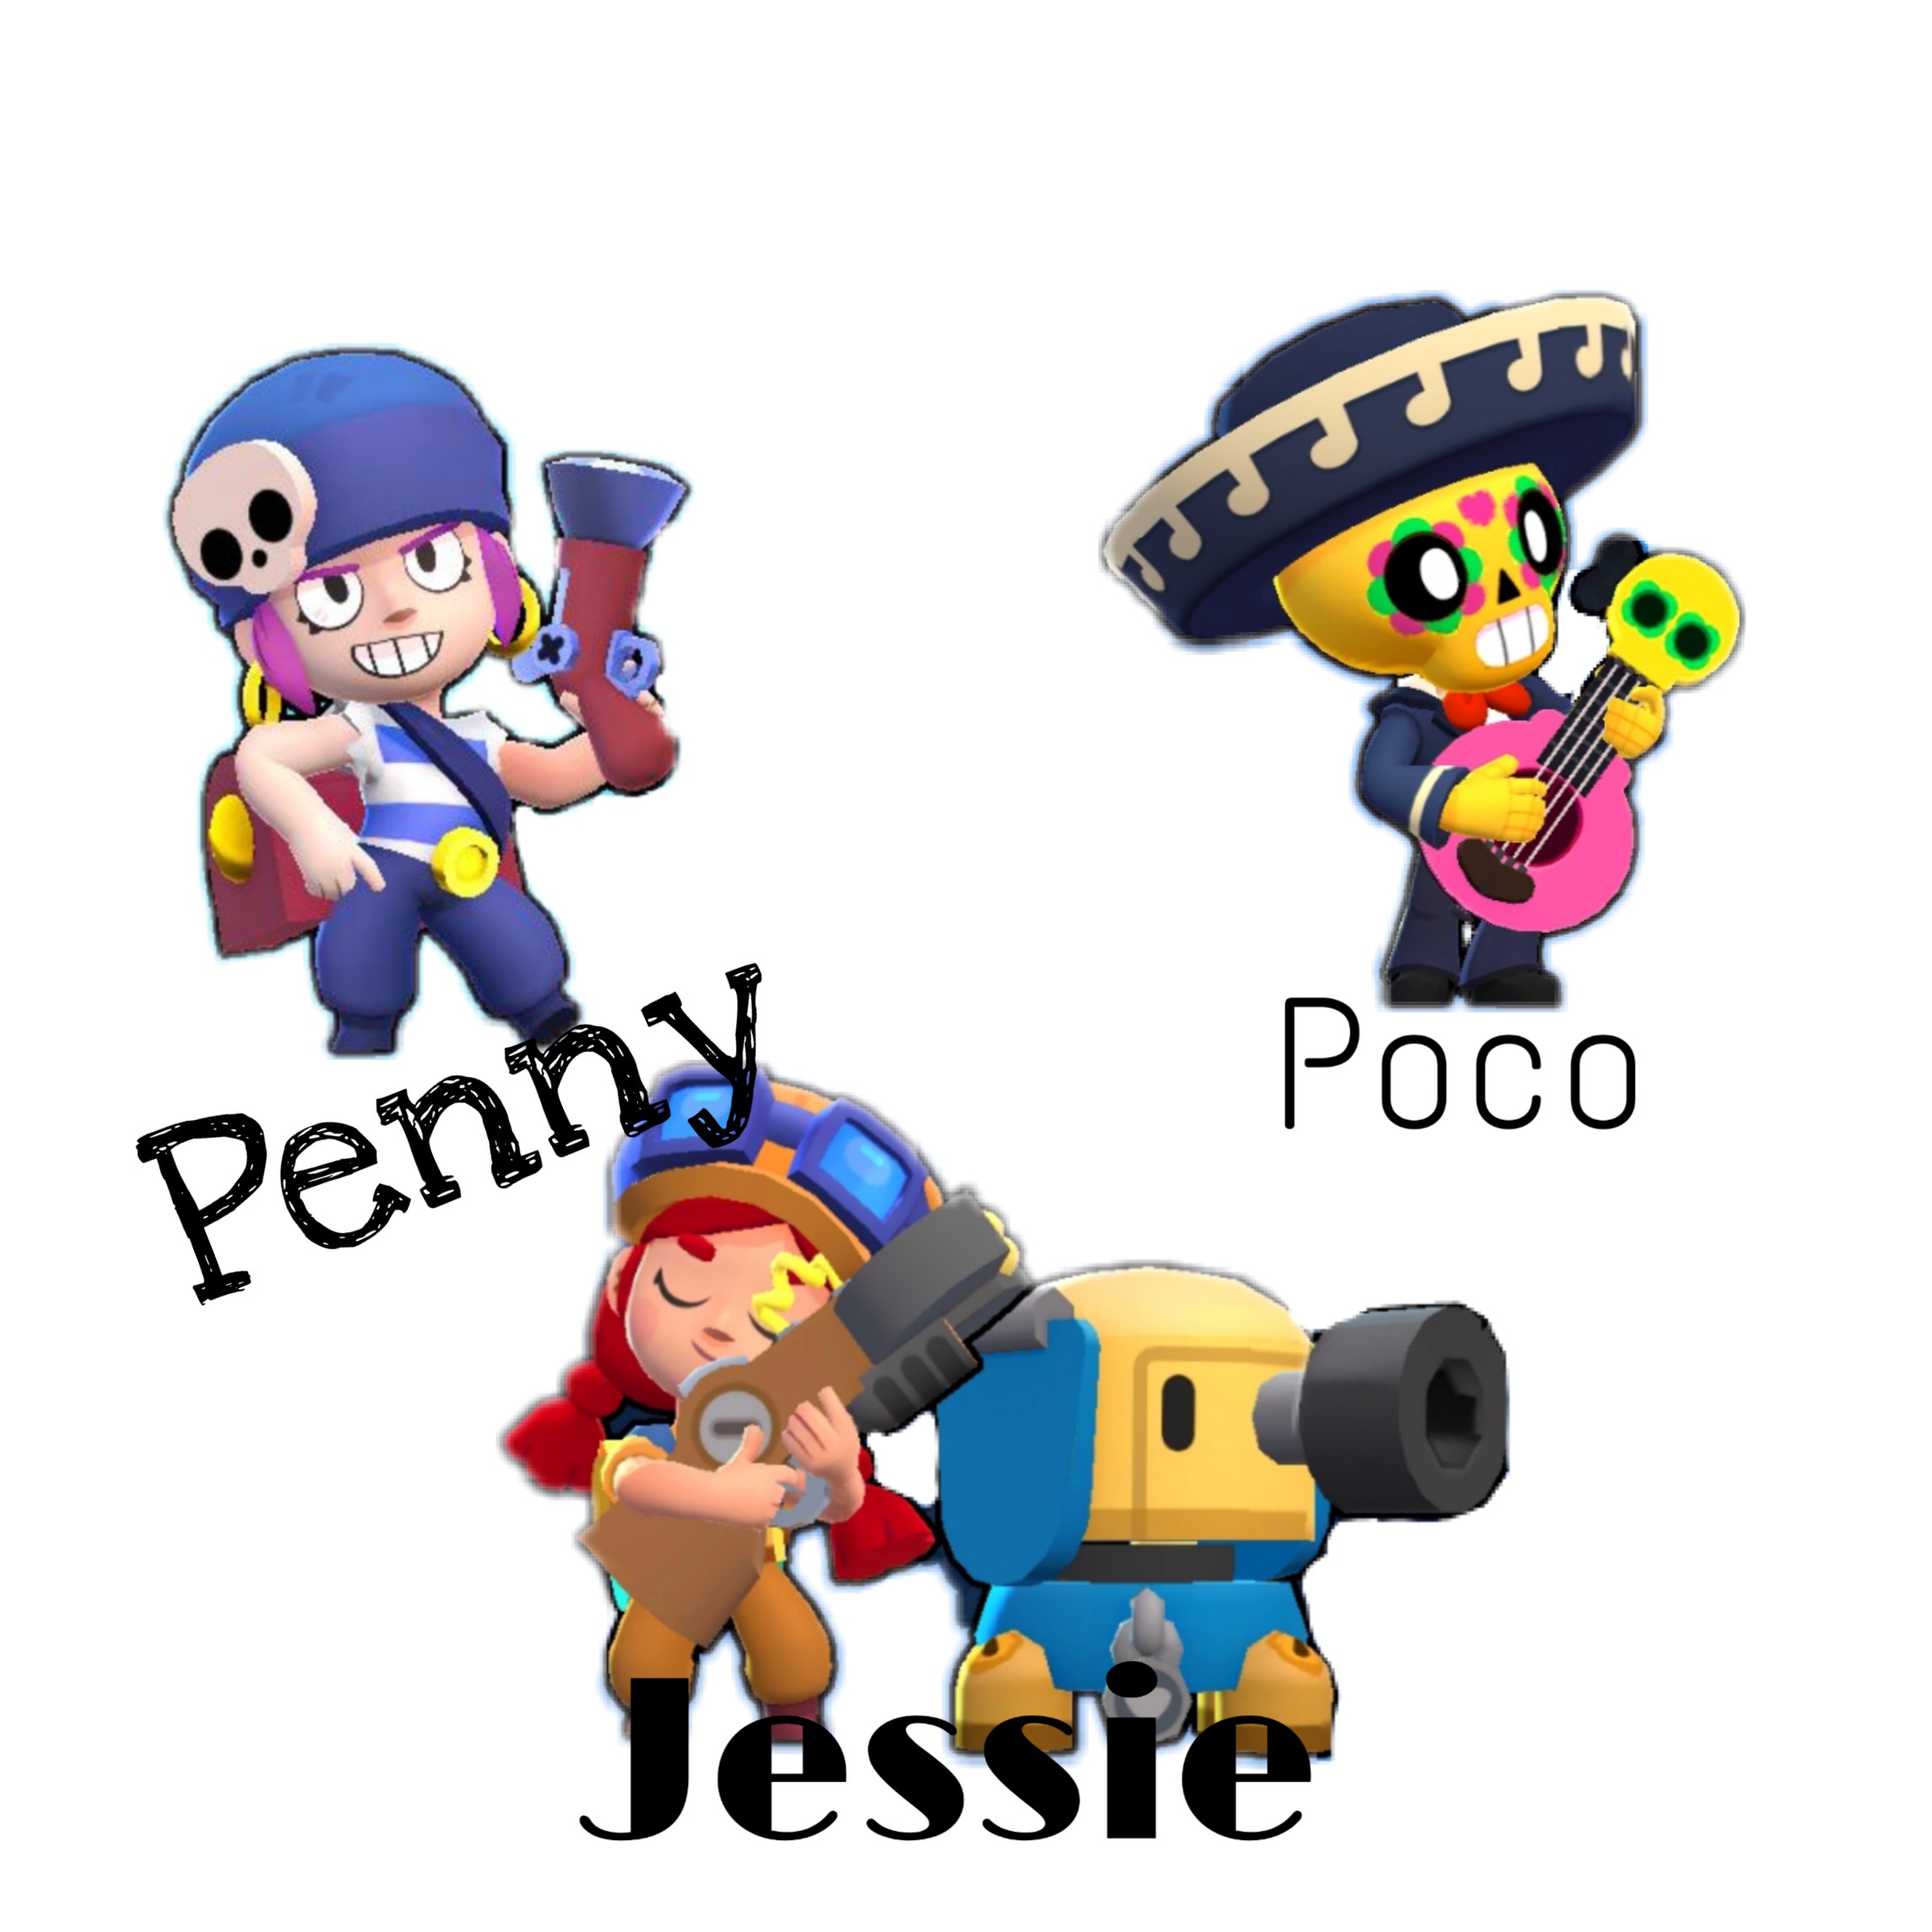 Brawlstars Penny Poco Jessie Image By Forttii - jessie et penny brawl star